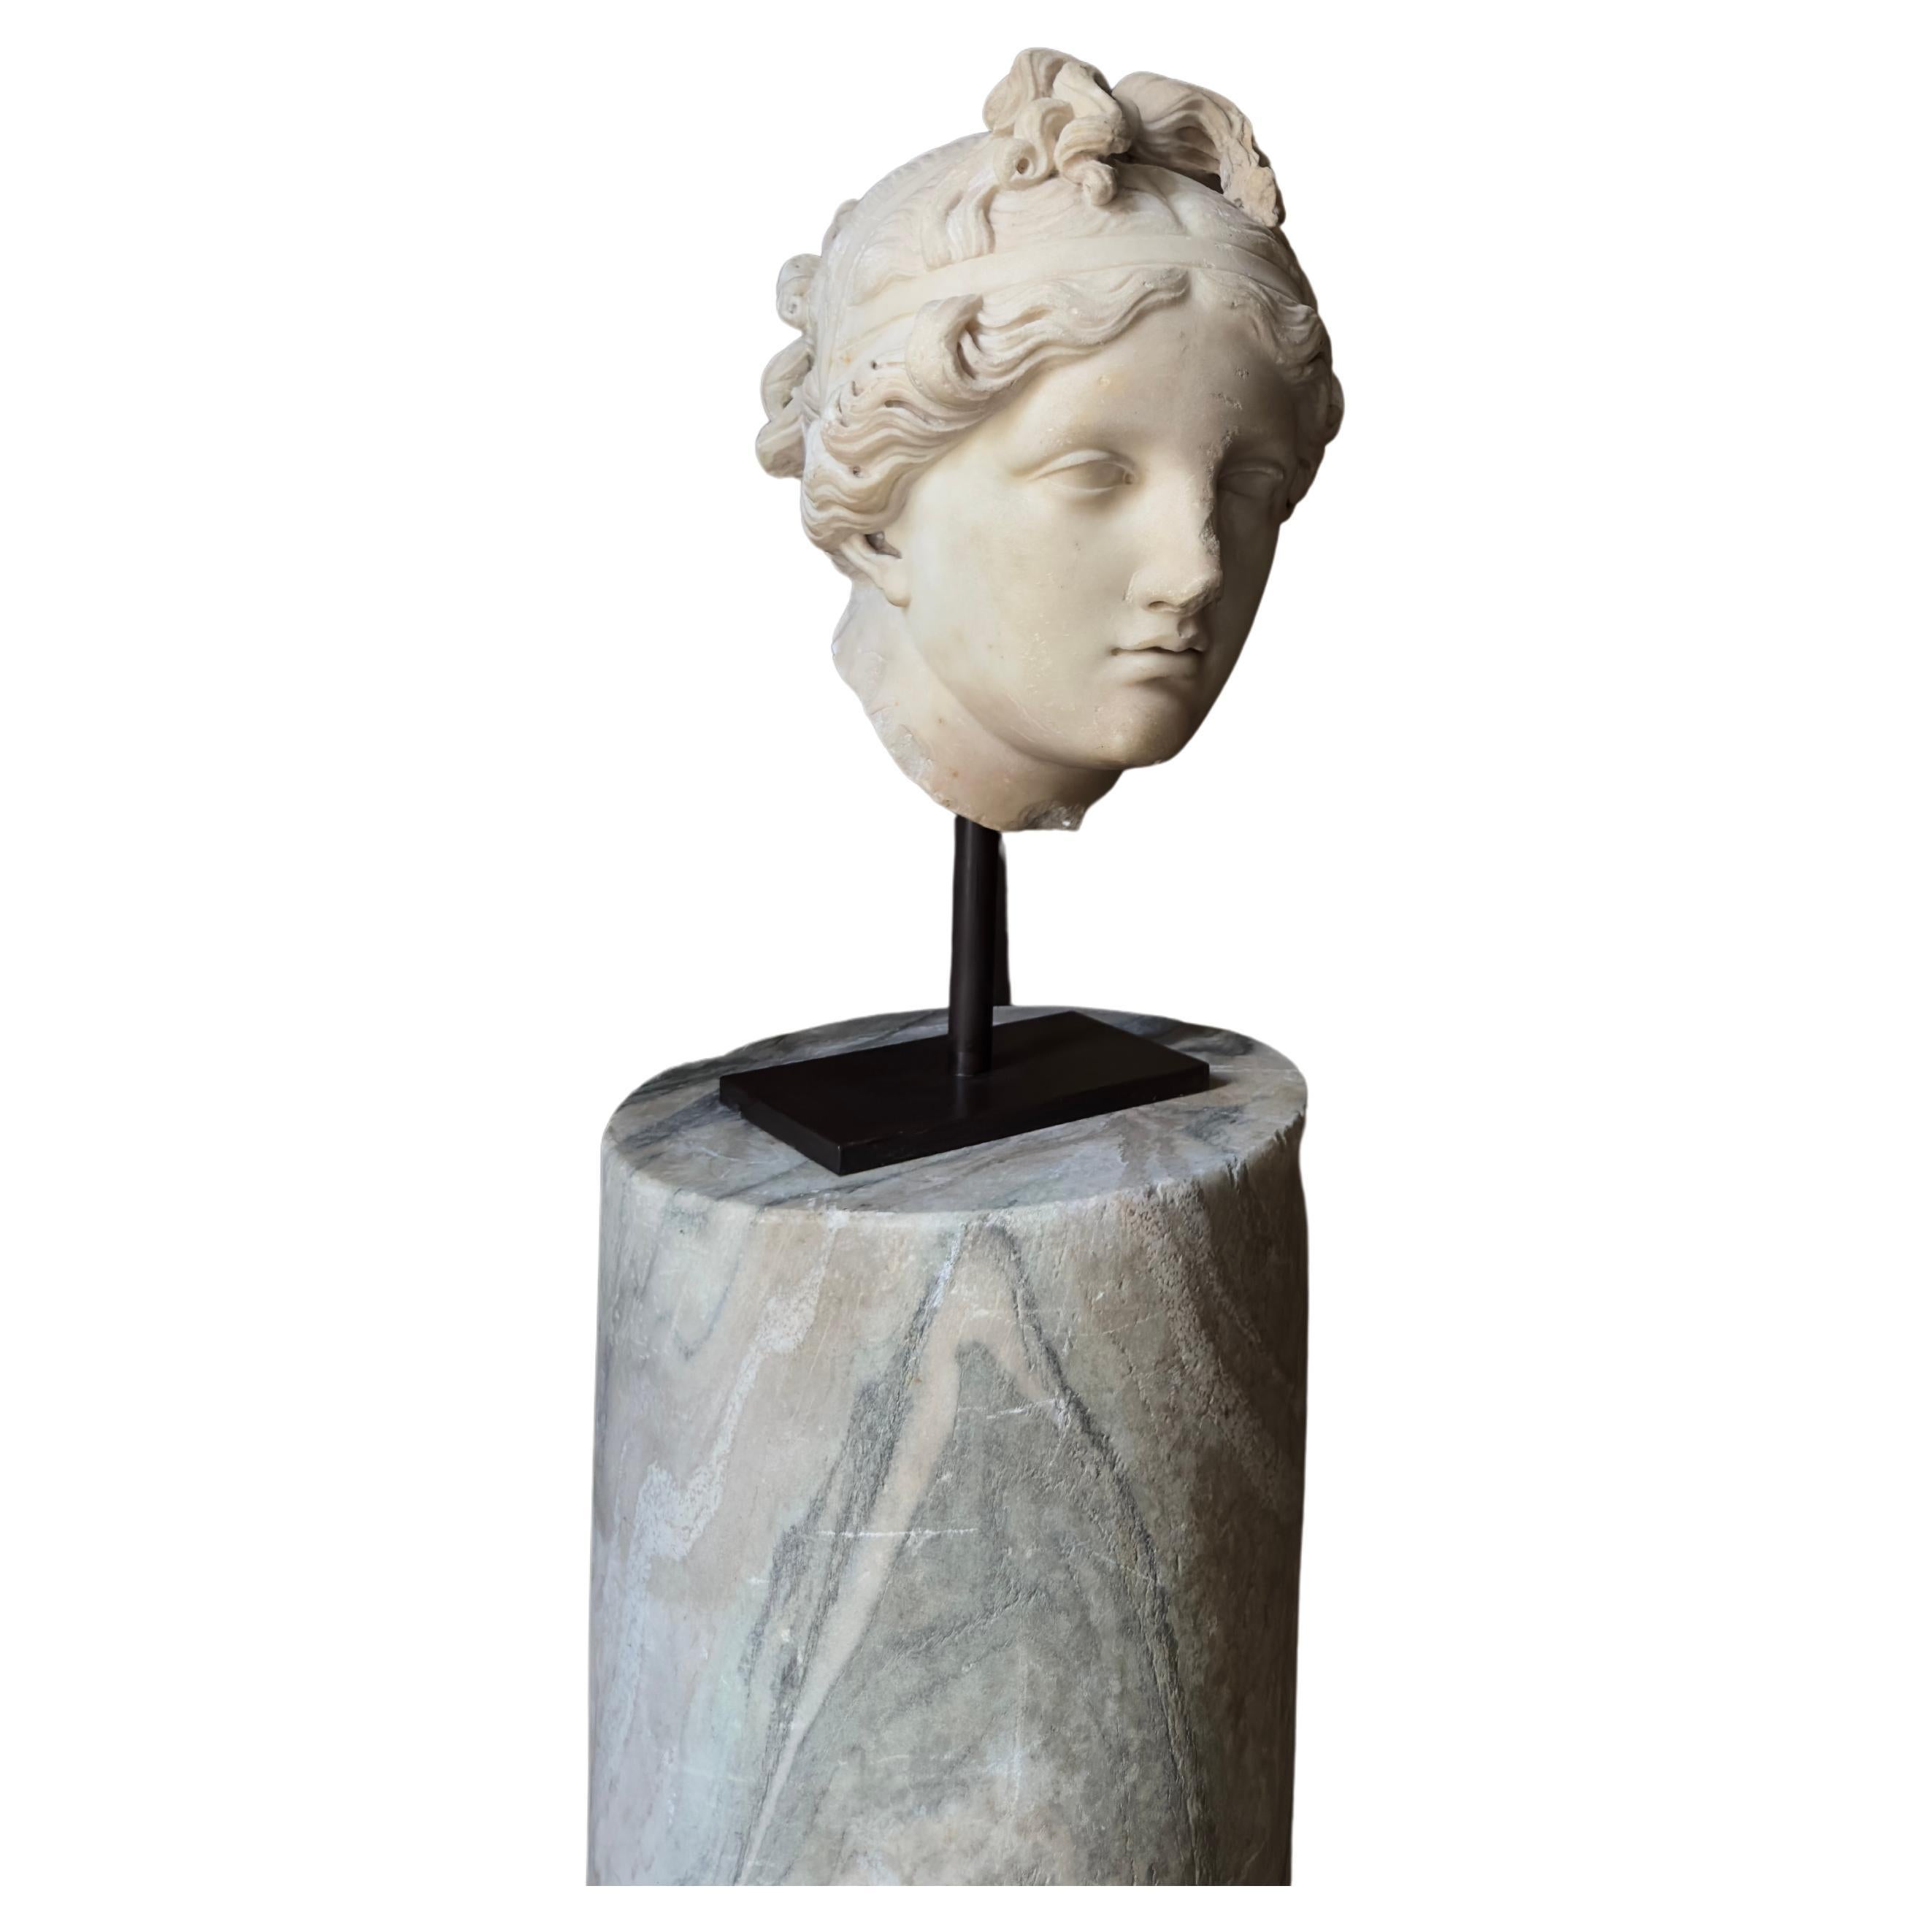 Tête de Vénus statuaire en marbre du 18e siècle ou plus ancienne